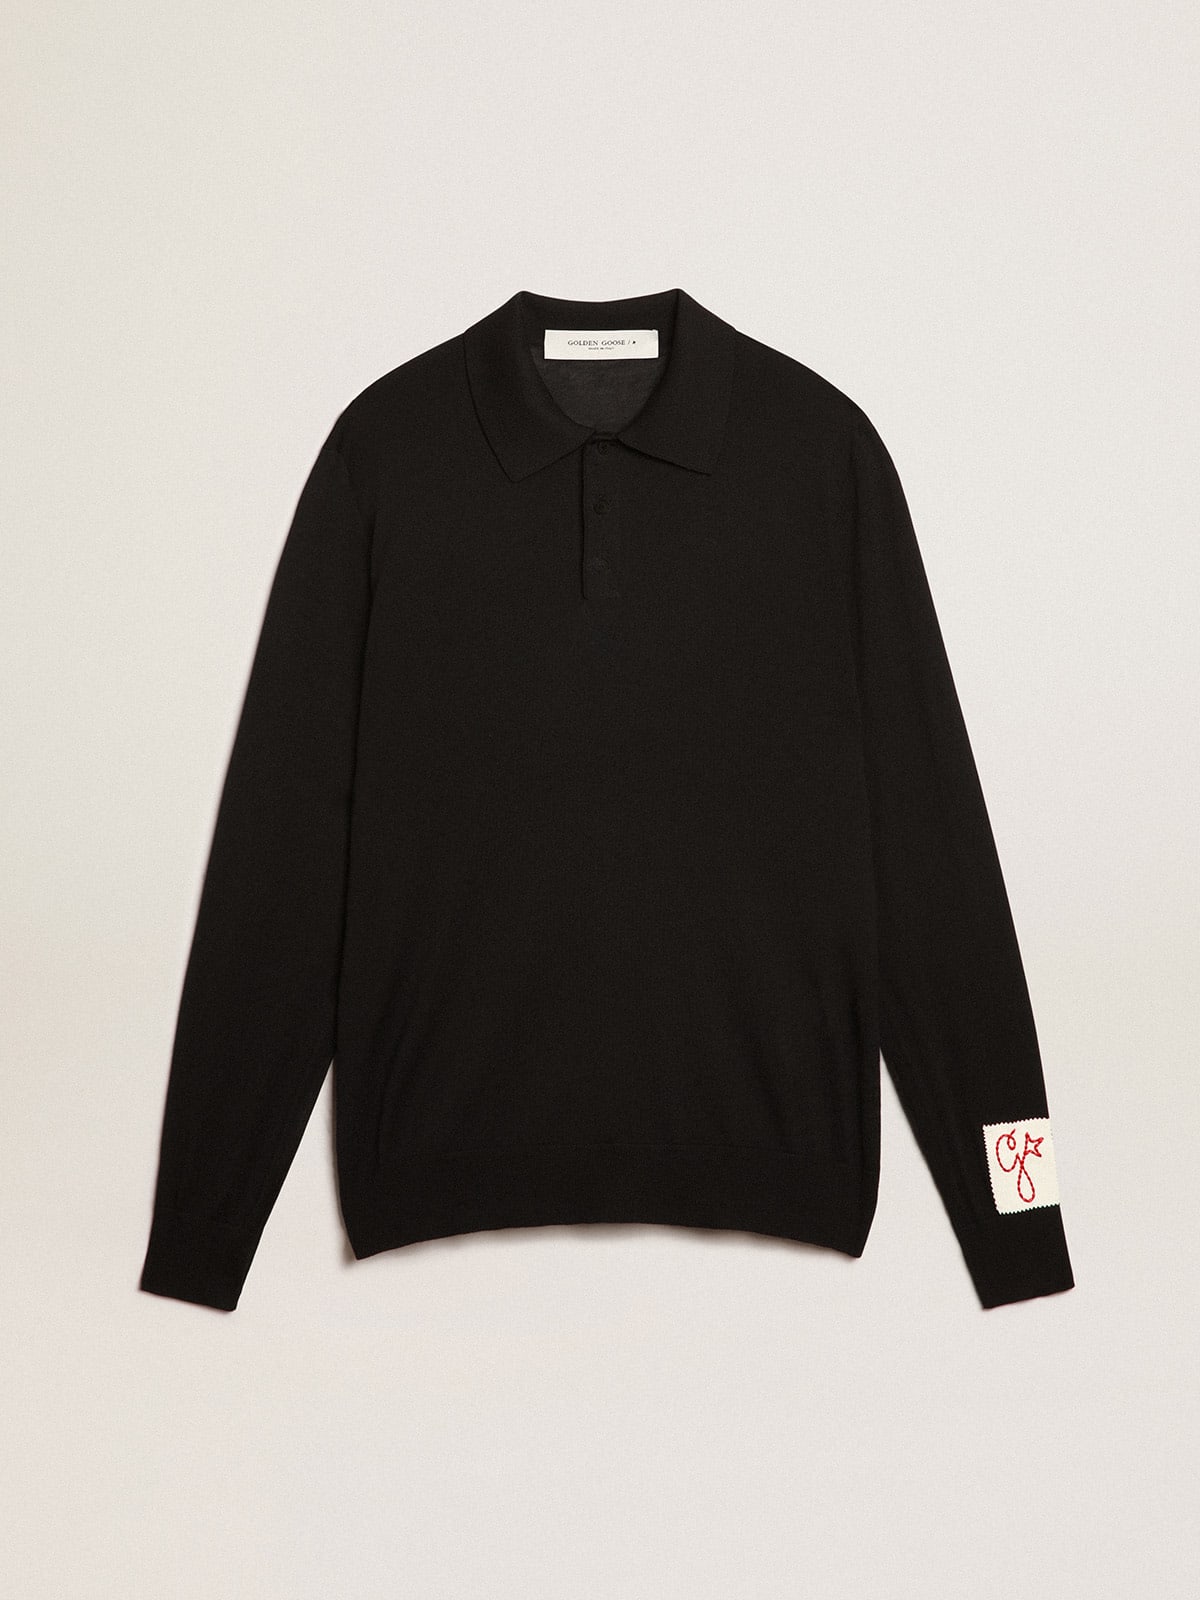 Men's long-sleeved polo shirt in black merino wool